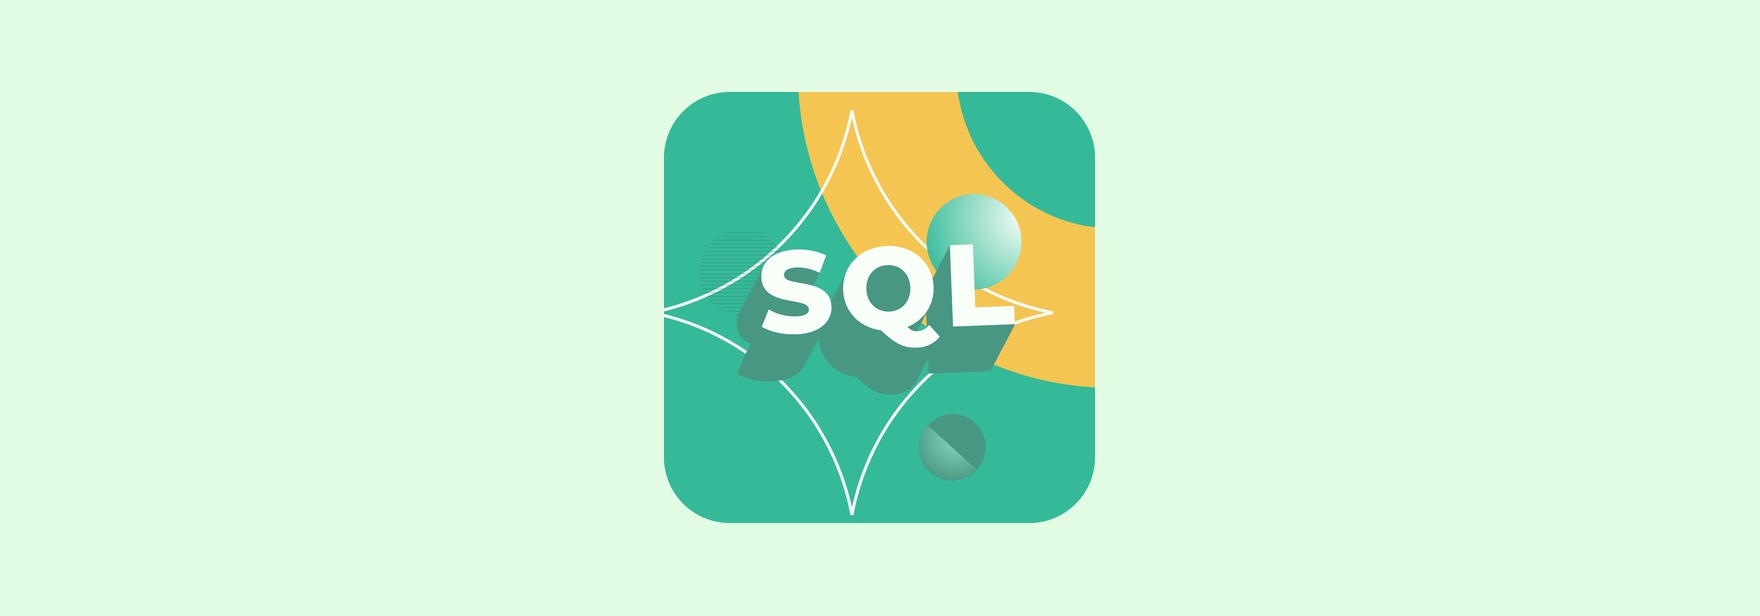 Кручу, верчу логи при помощи SQL — облегчаем анализ данных